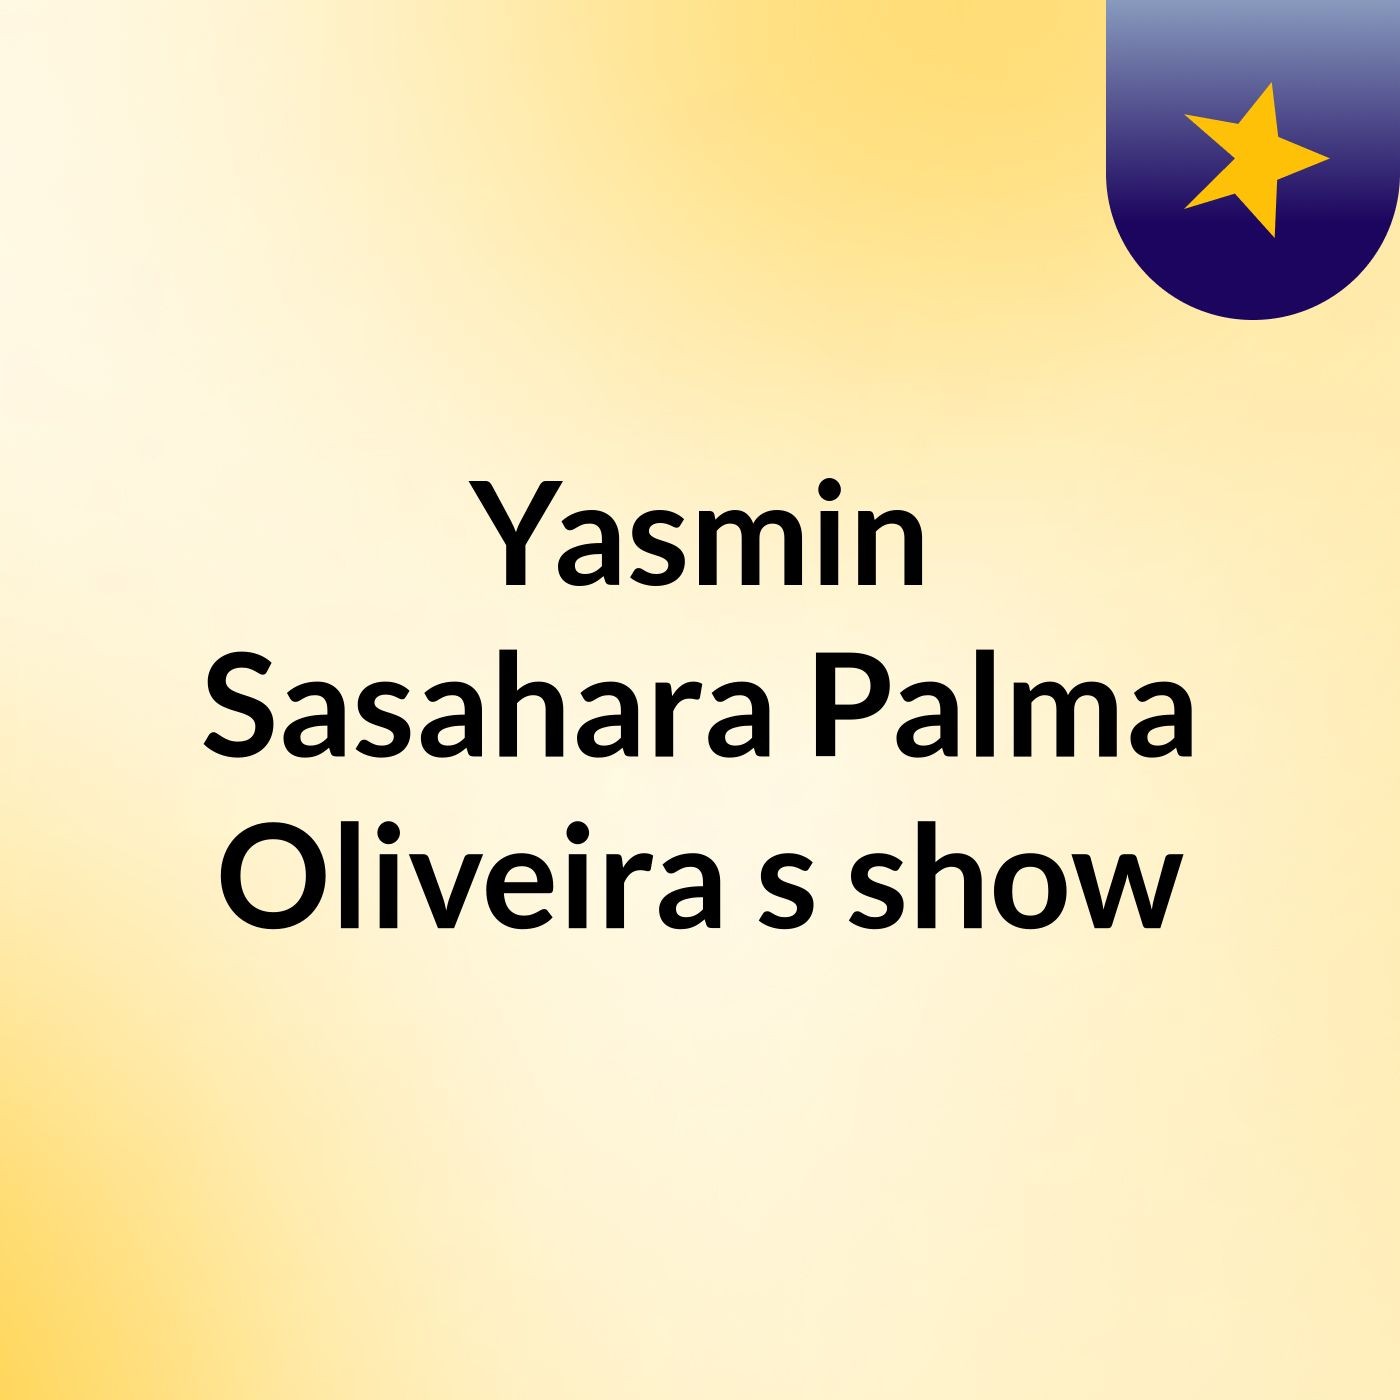 Yasmin Sasahara Palma Oliveira's show